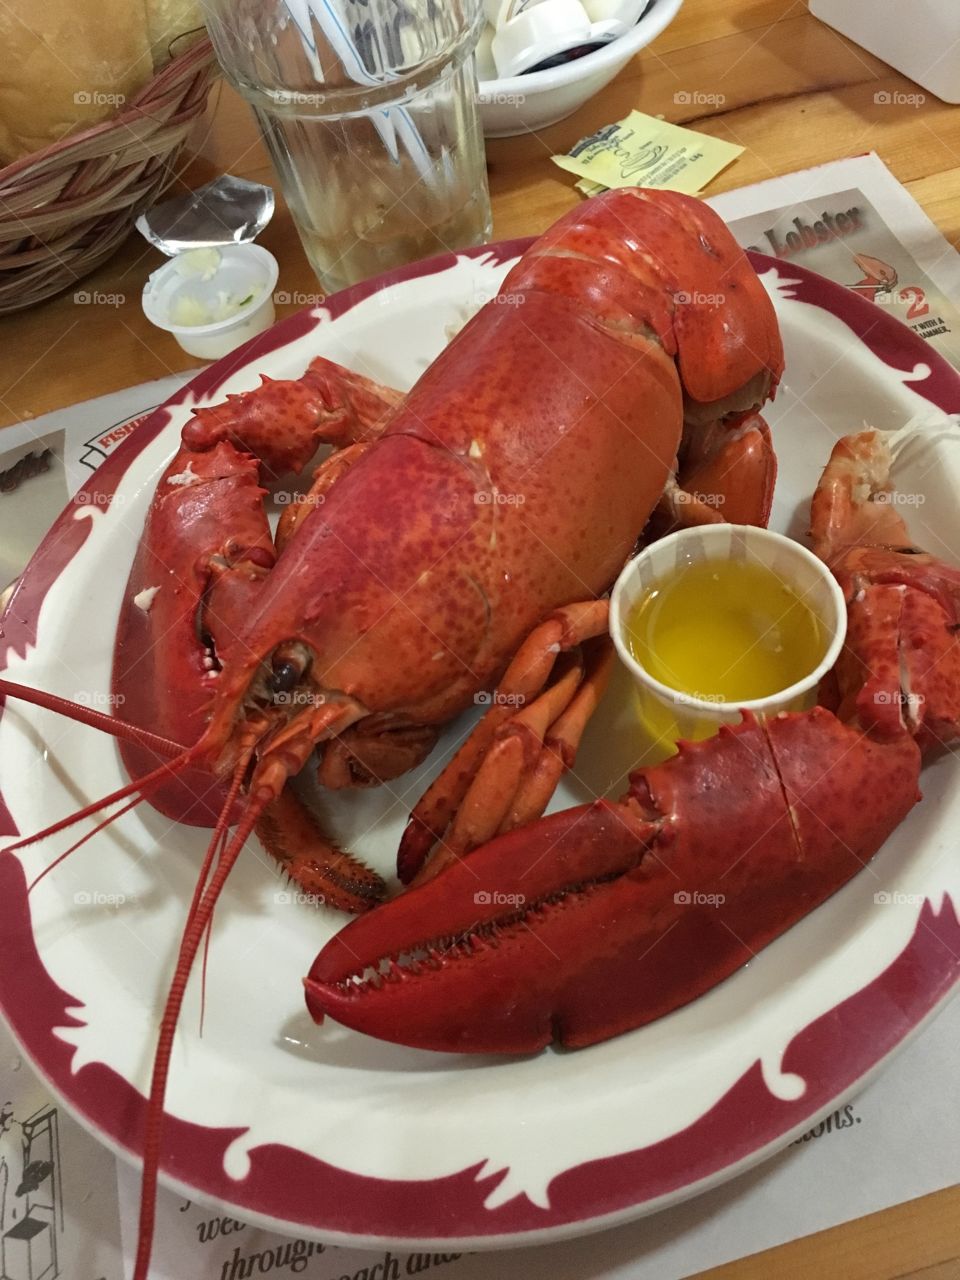 Lobster! 